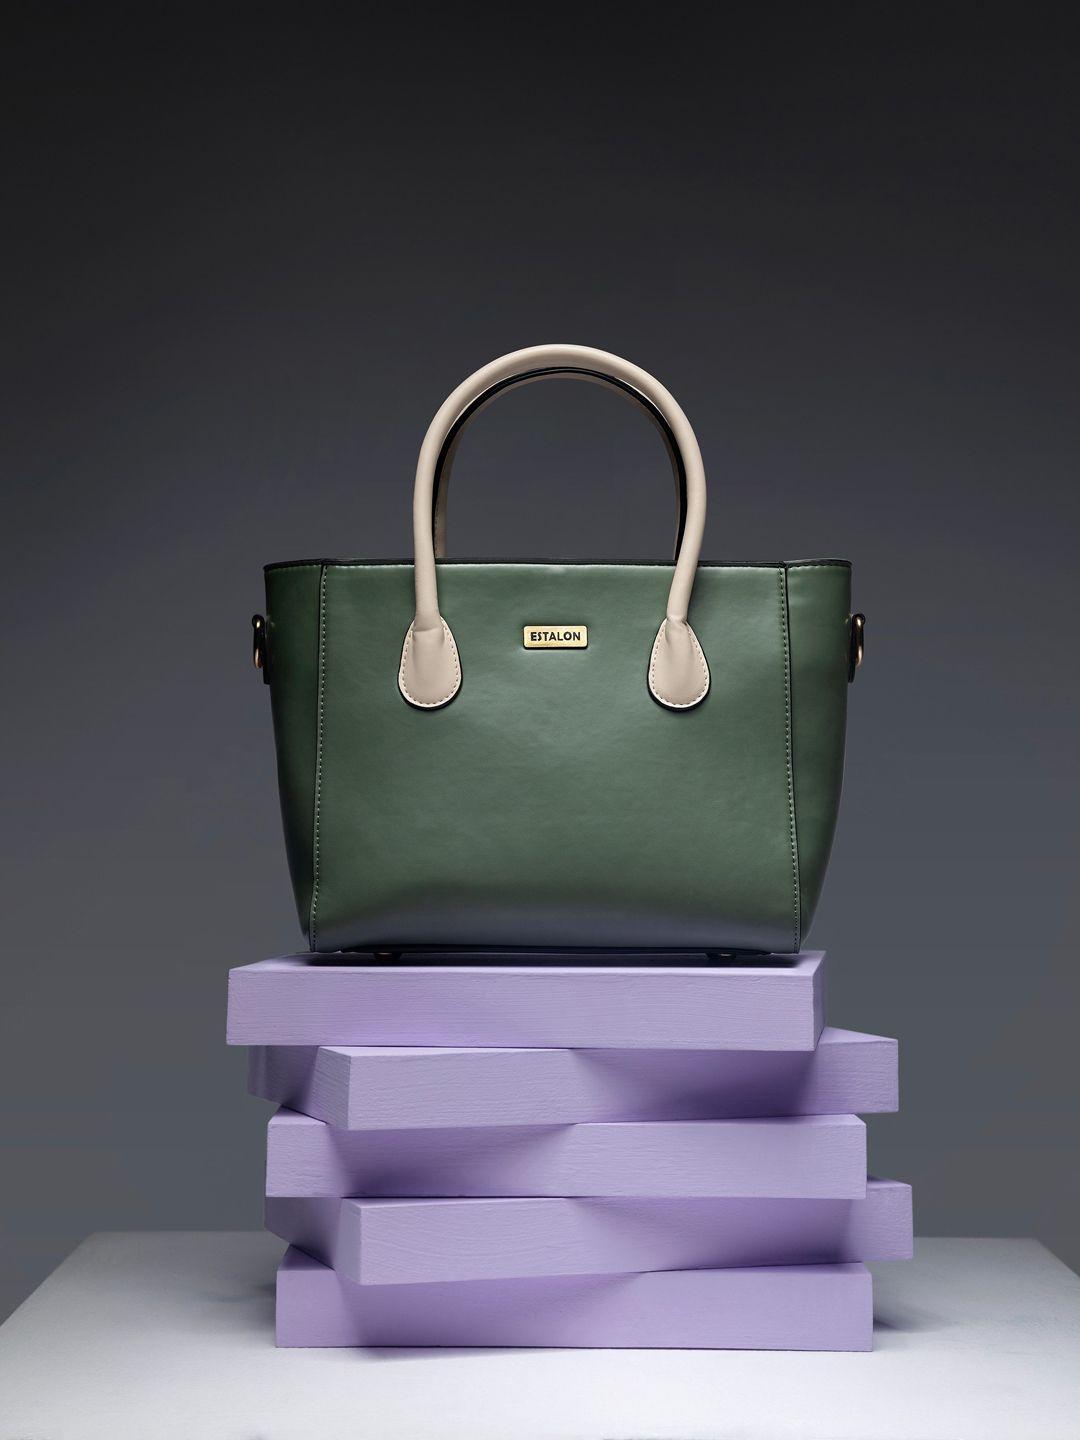 estalon olive green structured handheld bag